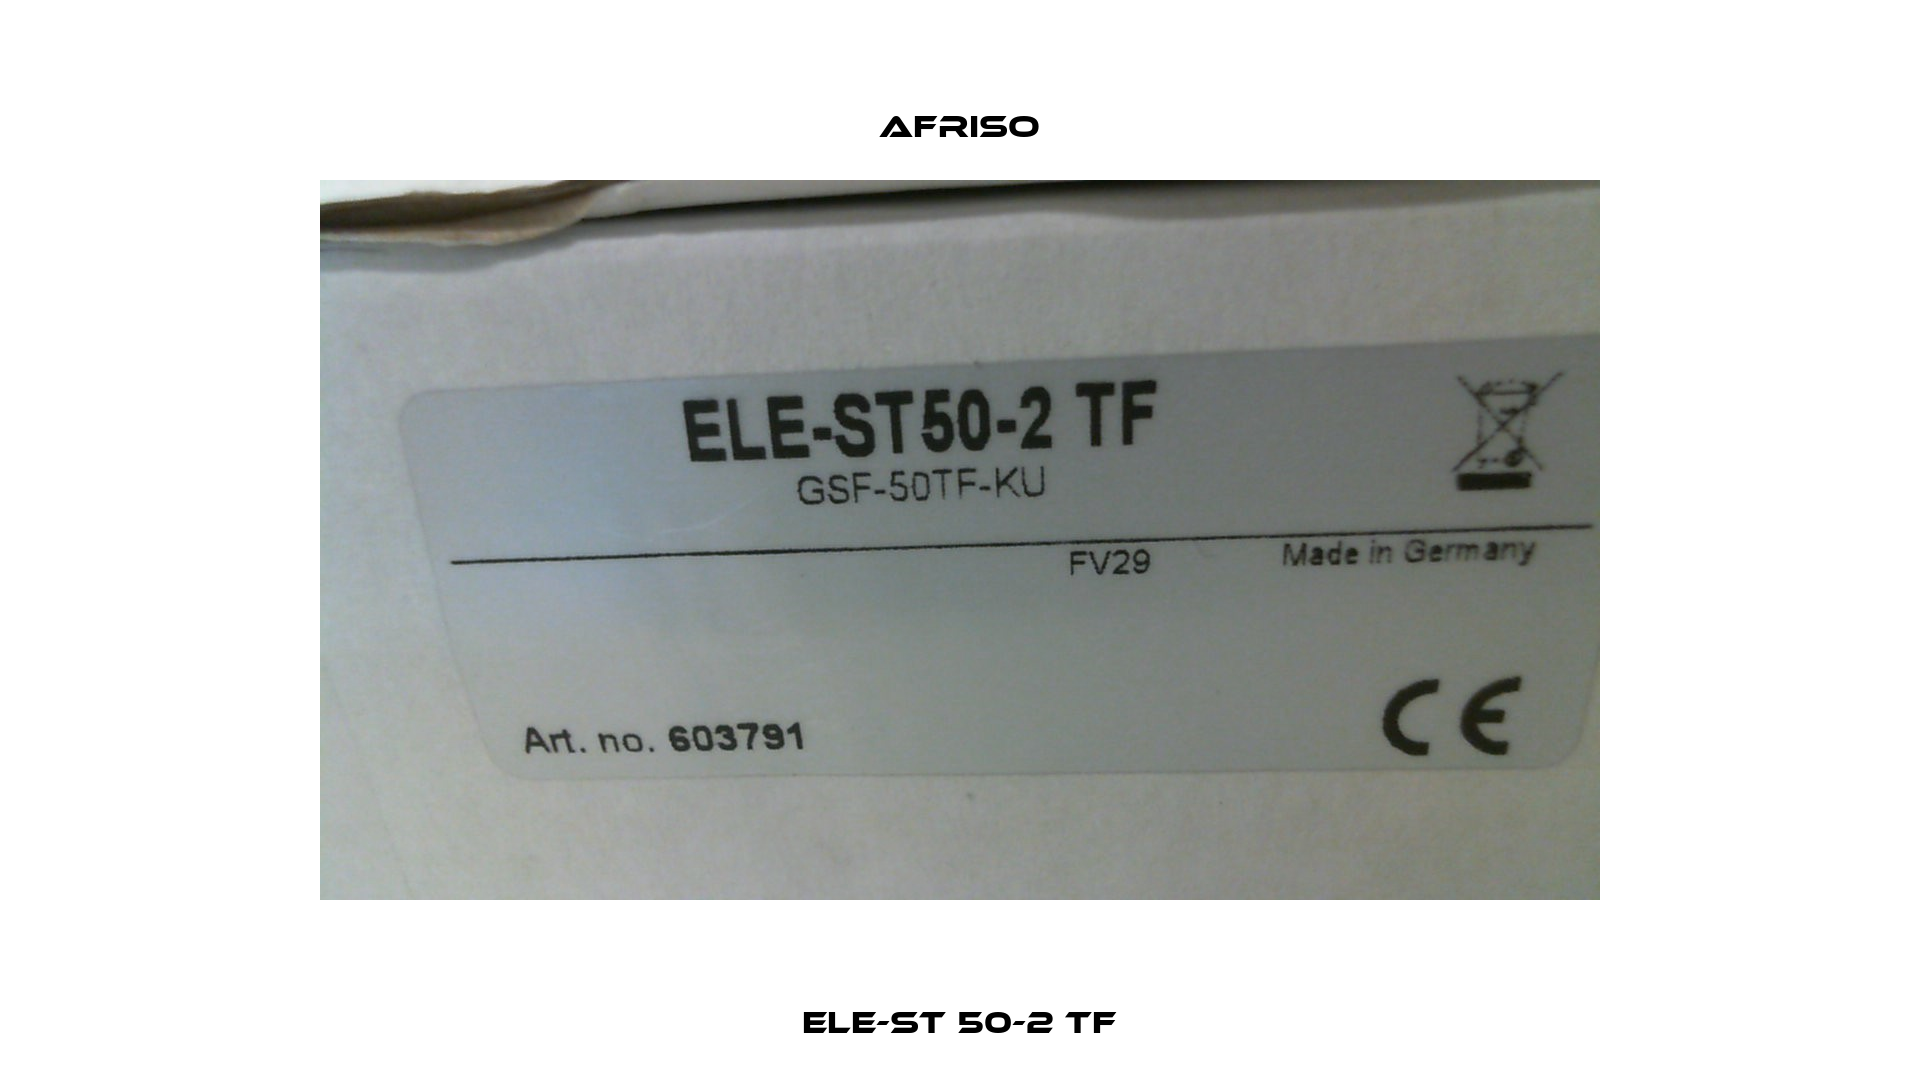 ELE-ST 50-2 TF Afriso